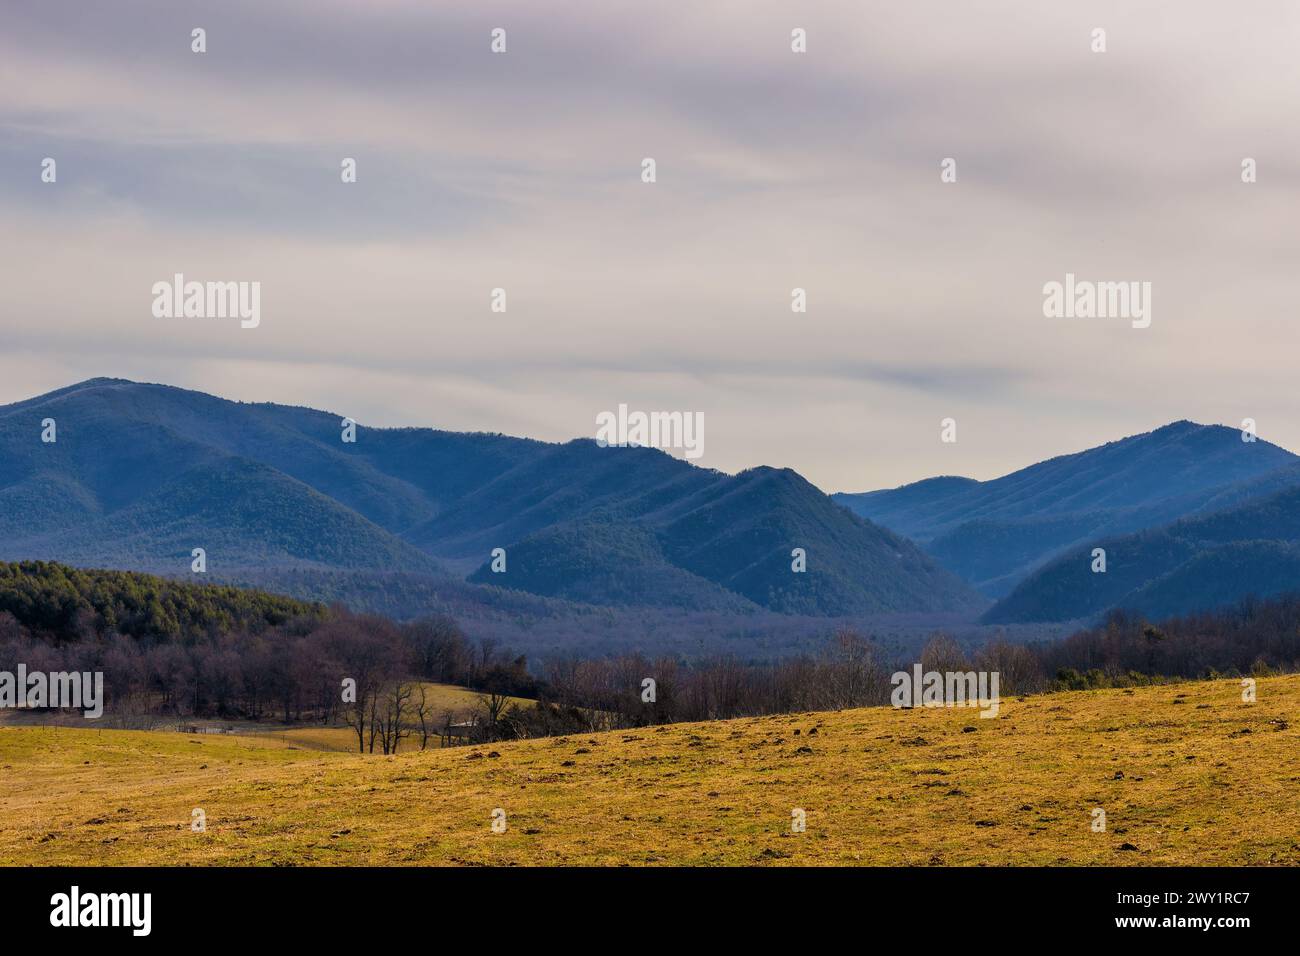 Vista panoramica di una sezione delle Blue Ridge Mountains vista nella campagna della Virginia vicino a Staunton. Foto Stock